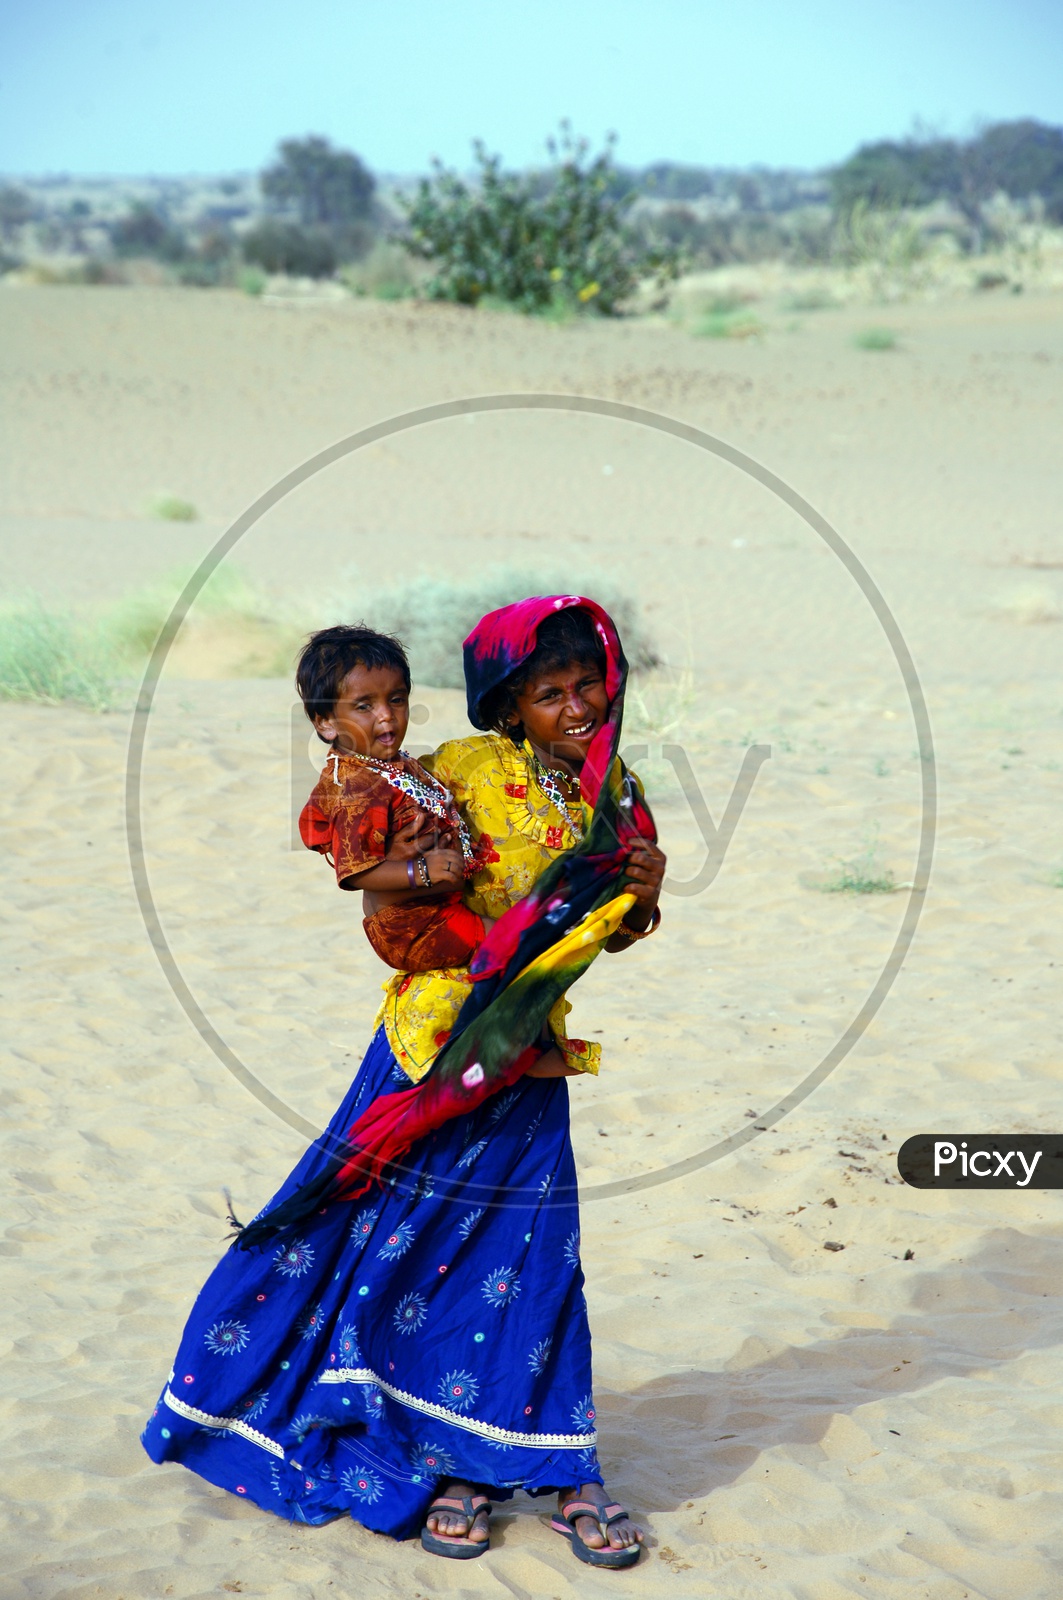 A girl carrying little girl in the desert